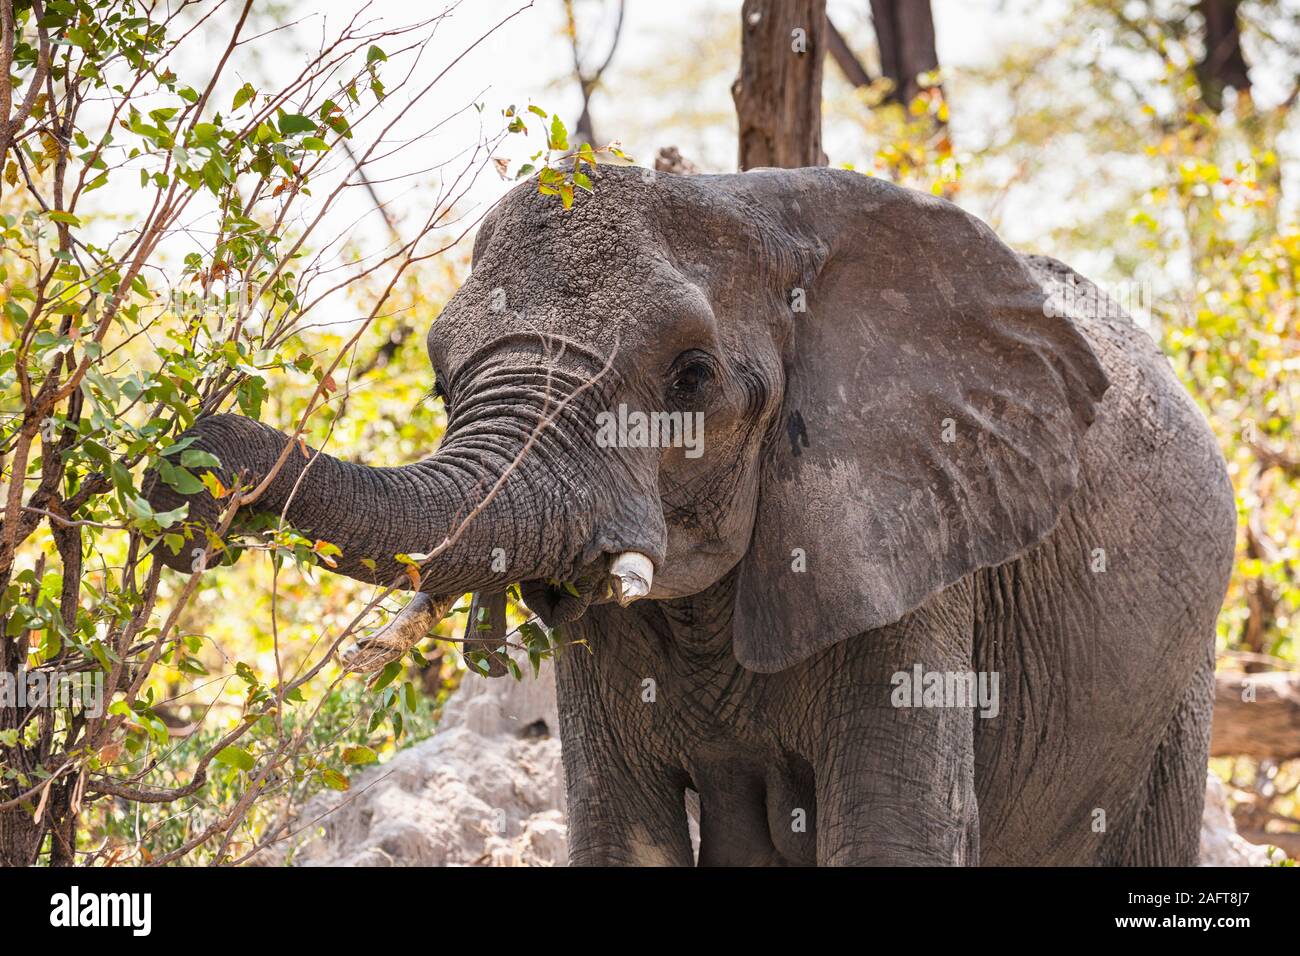 Éléphant mangeant des feuilles dans le Bush, réserve de gibier de Moremi, delta d'Okavango, Botswana, Afrique australe, Afrique Banque D'Images